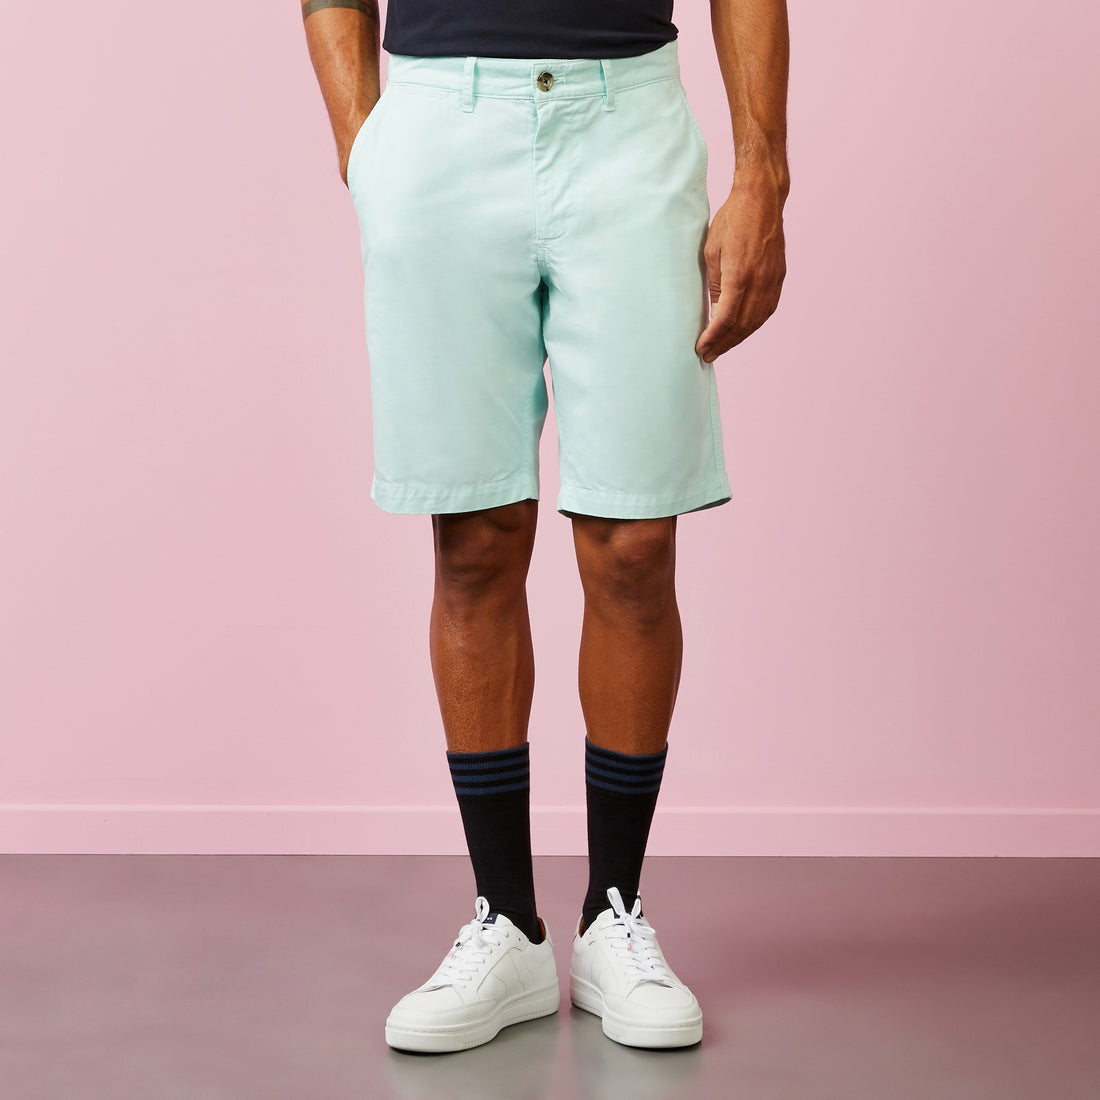 Light Turquoise Chino Bermuda Shorts - 02